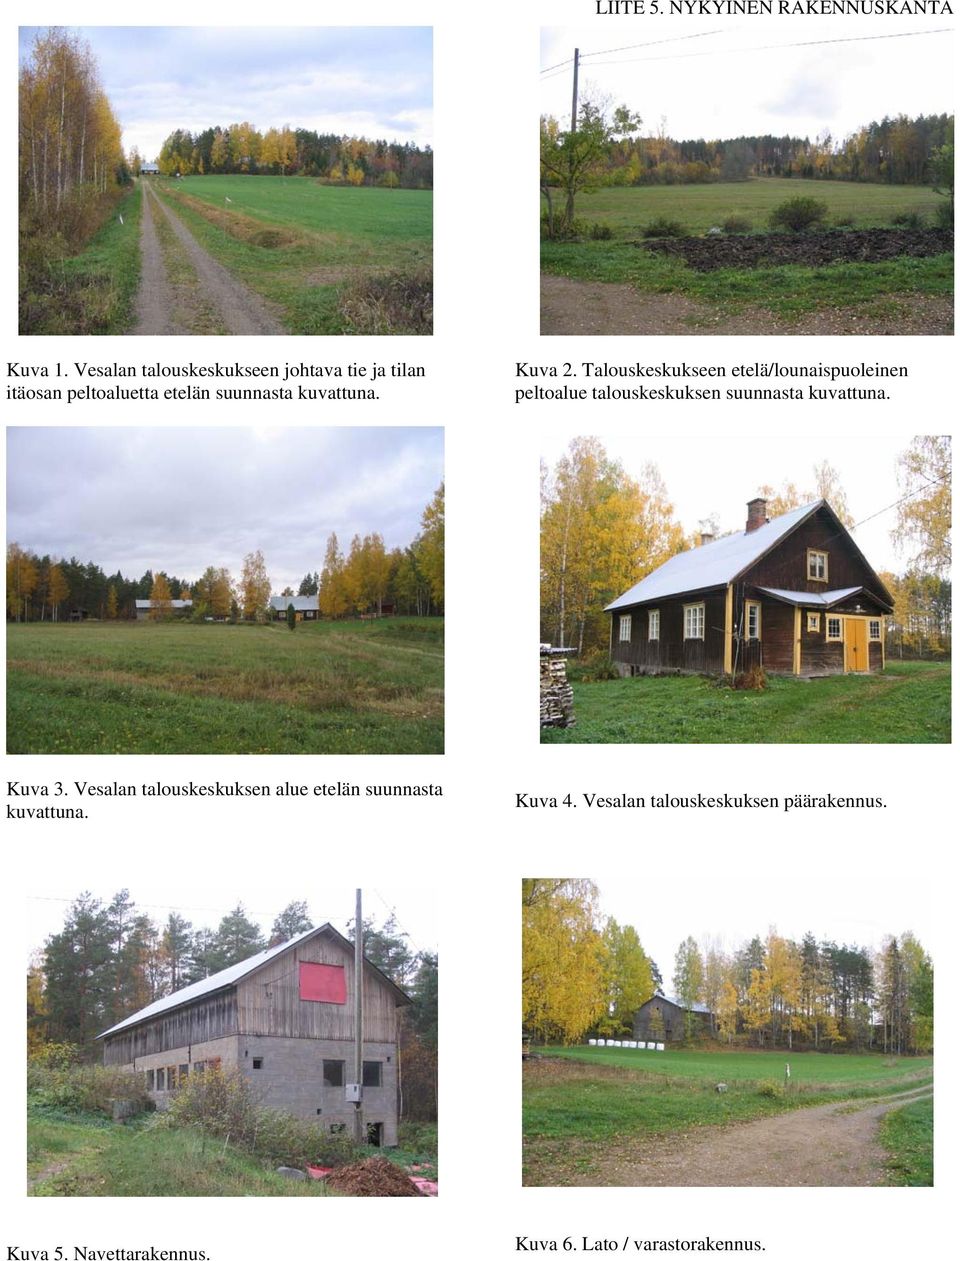 Kuva 2. Talouskeskukseen etelä/lounaispuoleinen peltoalue talouskeskuksen suunnasta kuvattuna.